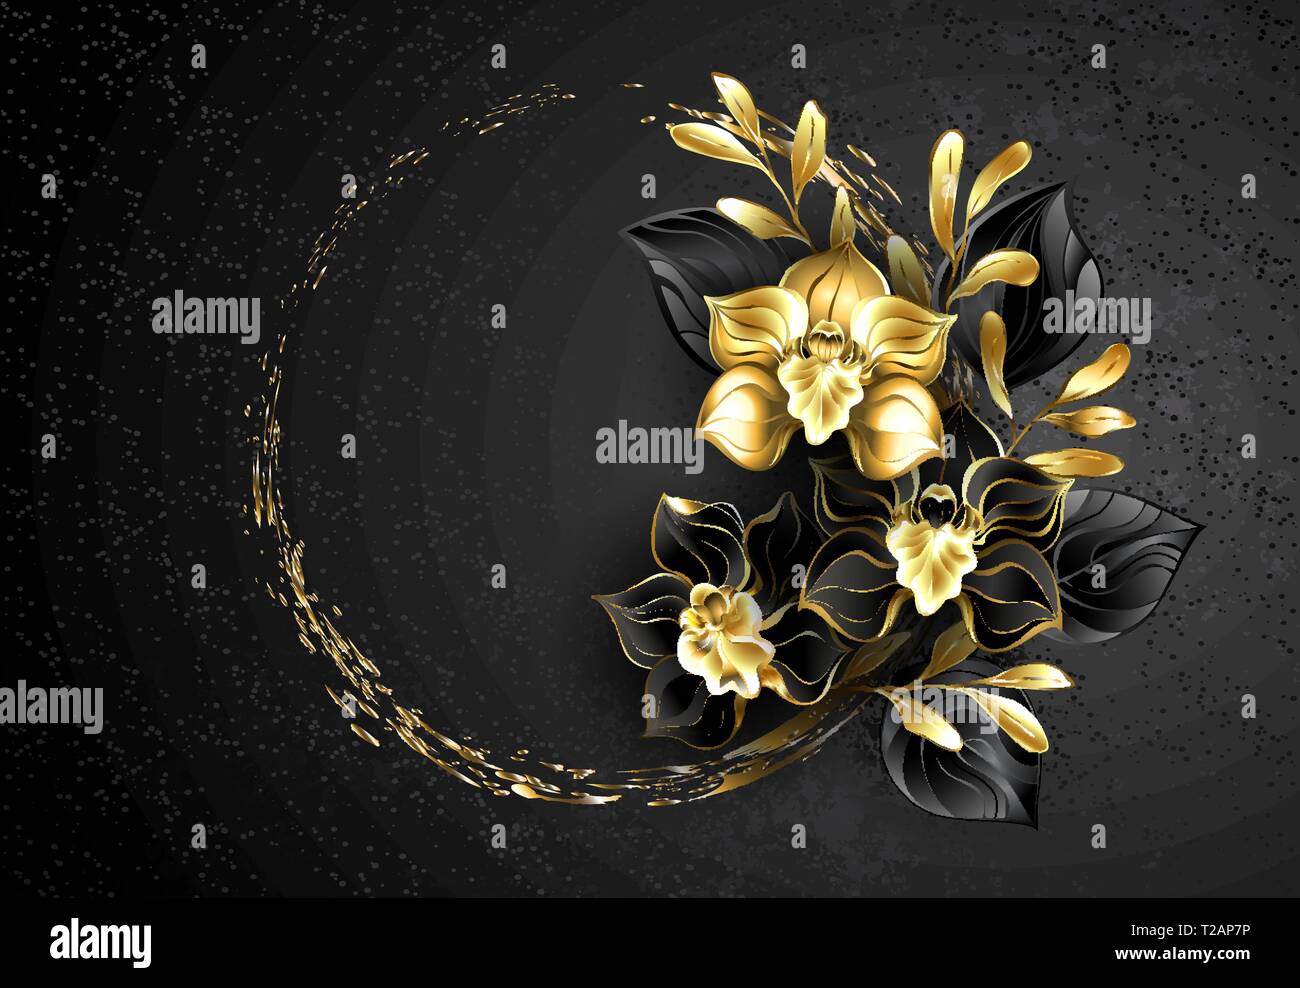 Composizione dei gioielli nero orchidee, con nero e oro foglie decorative su sfondo a trama con gocce di vernice. Illustrazione Vettoriale